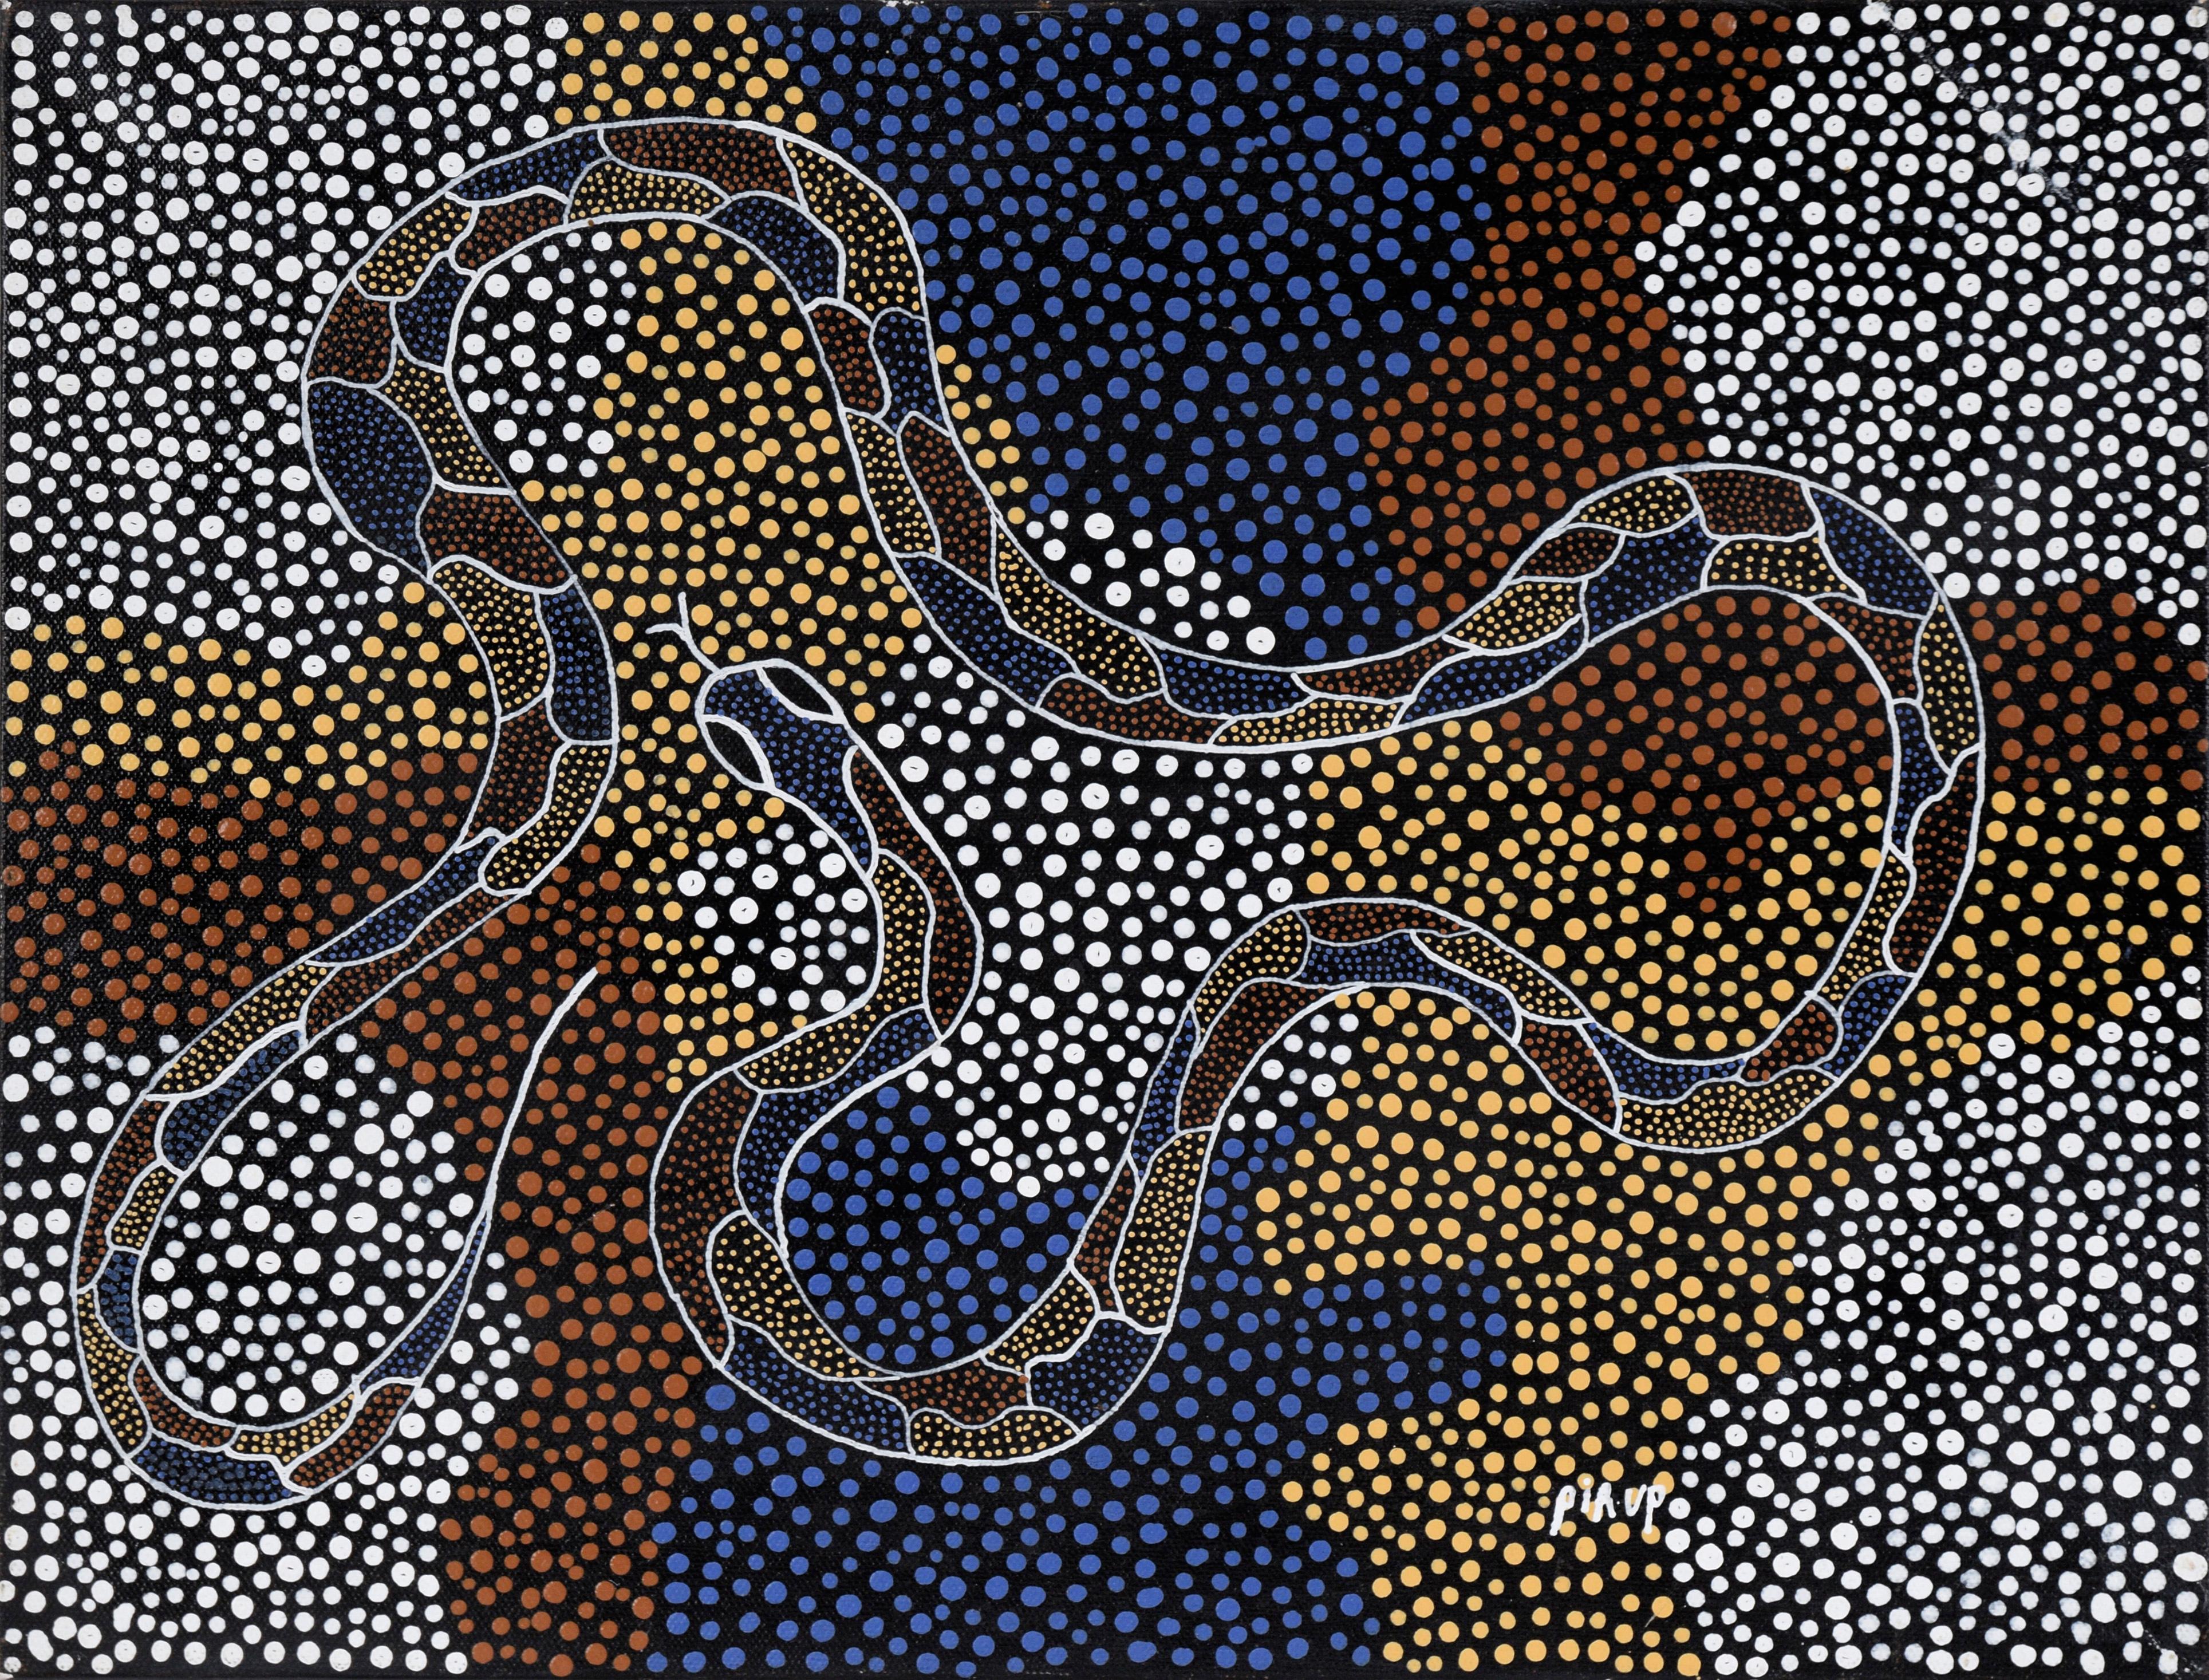 Le serpent du créateur - peinture aborigène à pois en acrylique sur toile